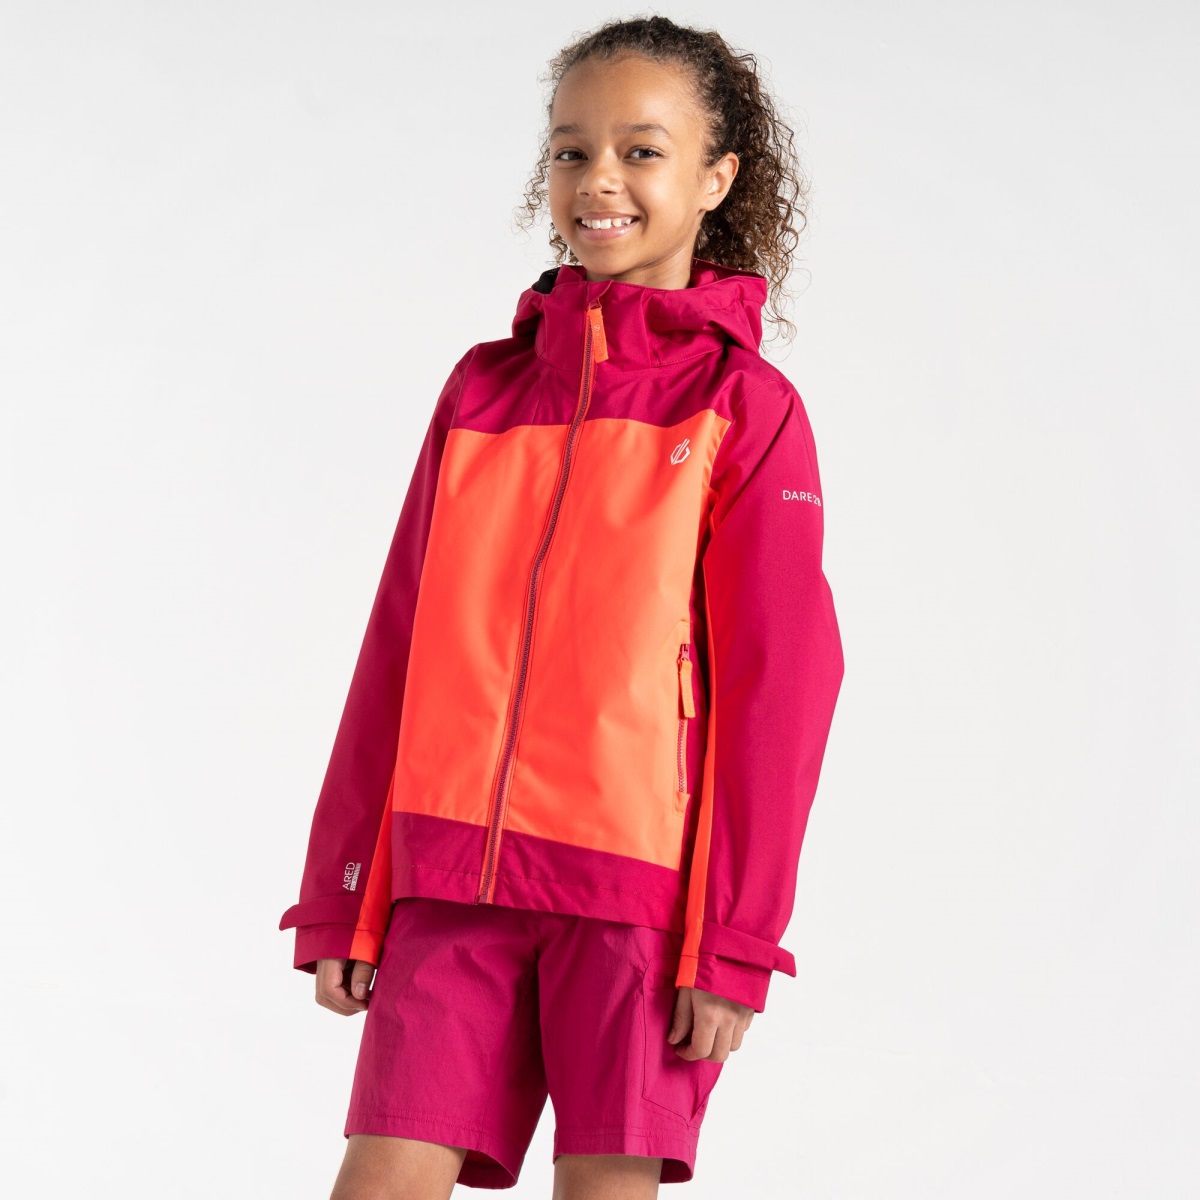 Dětská outdoorová bunda Dare2b EXPLORE oranžová/růžová 98-104